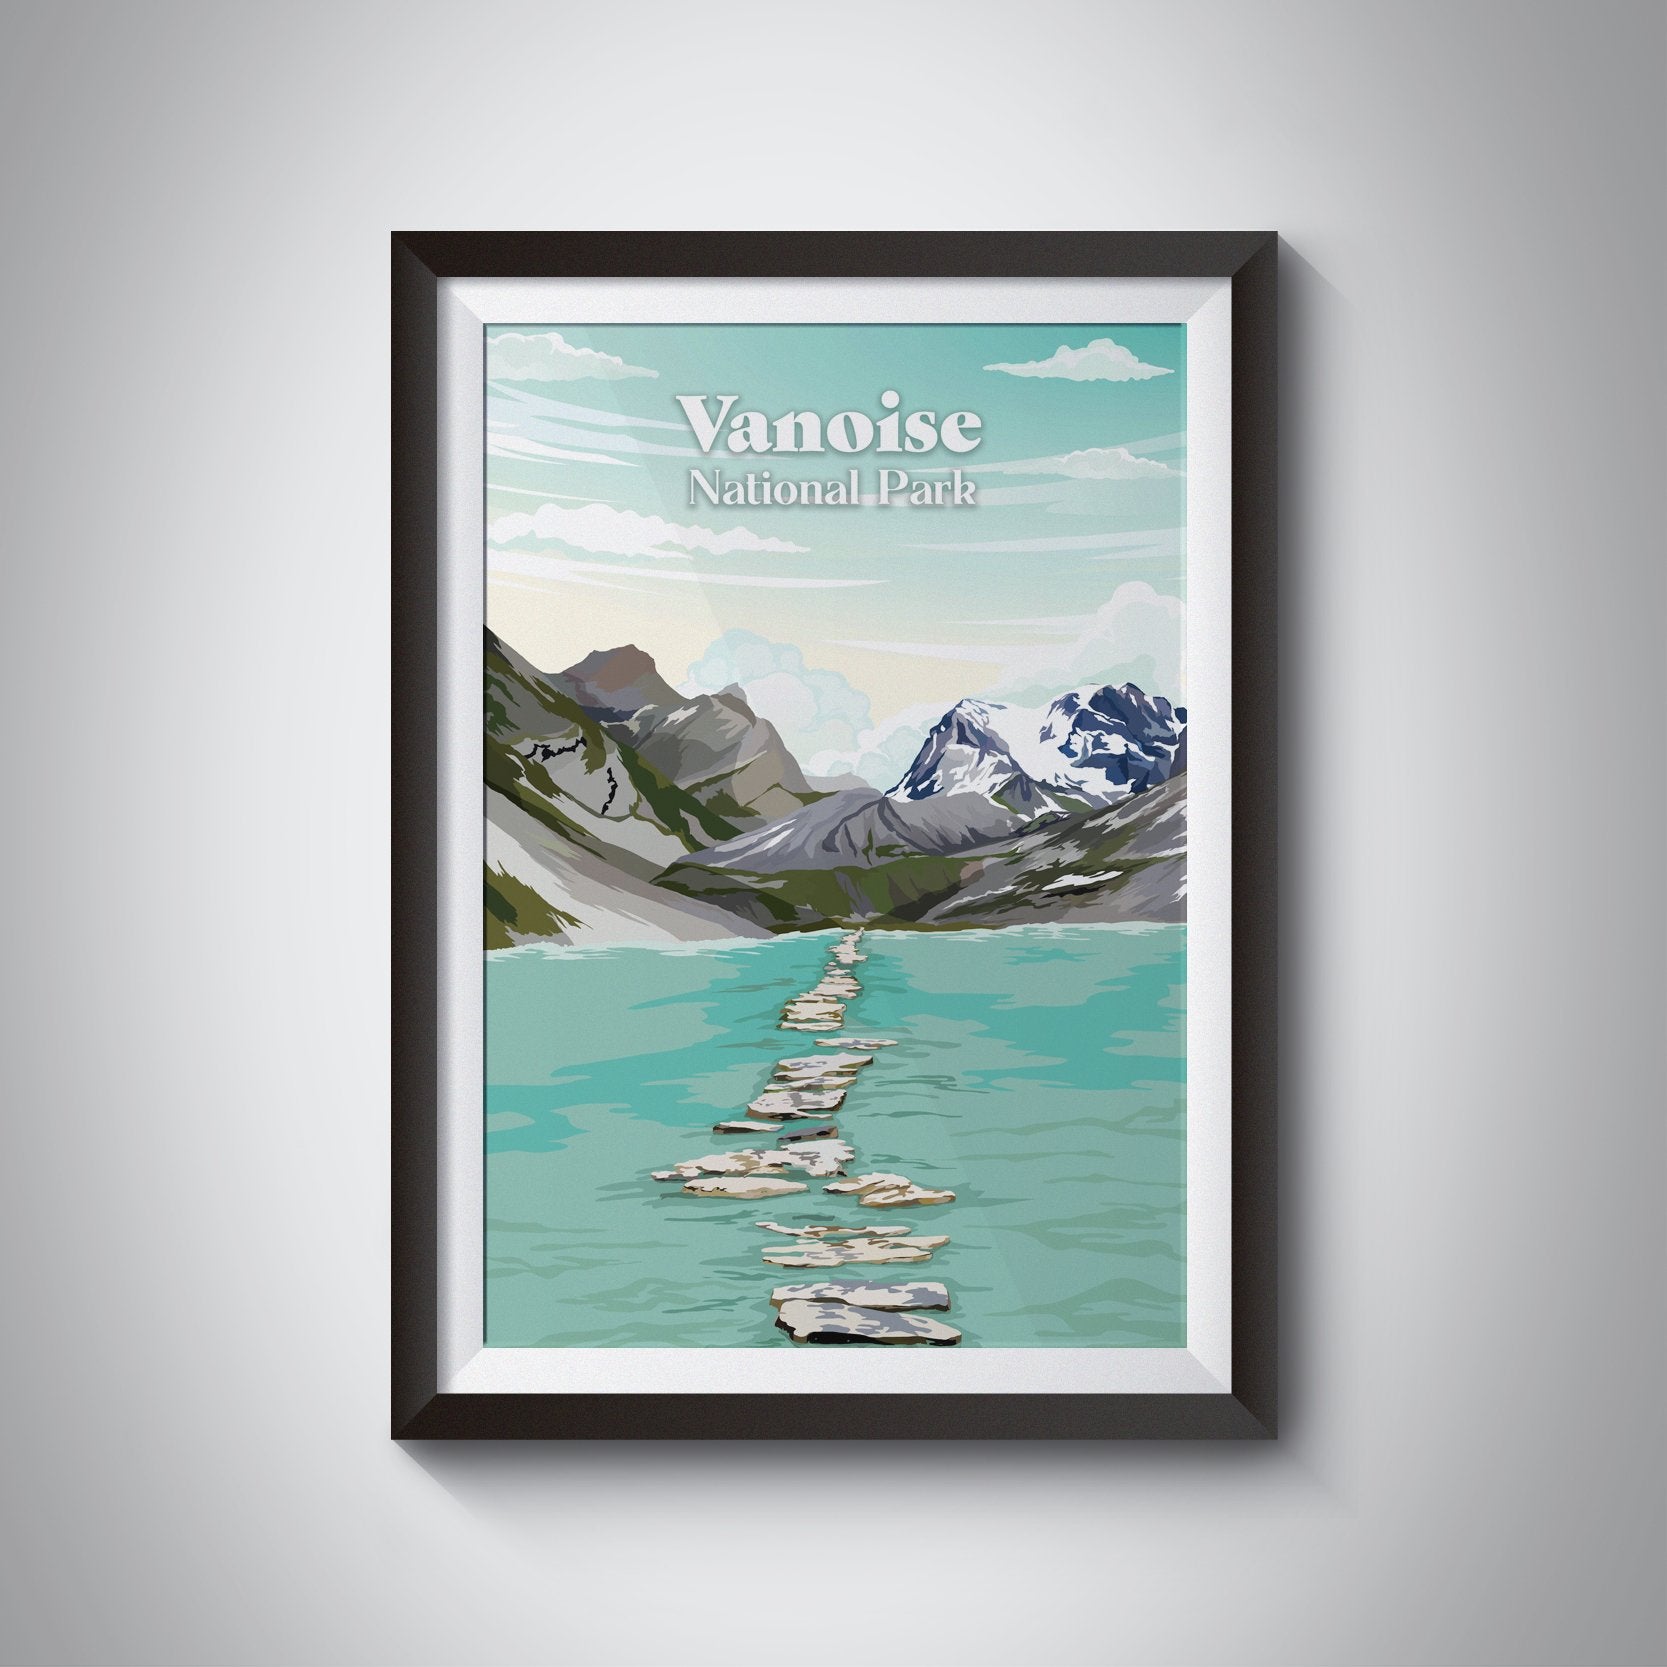 Vanoise National Park France Travel Poster